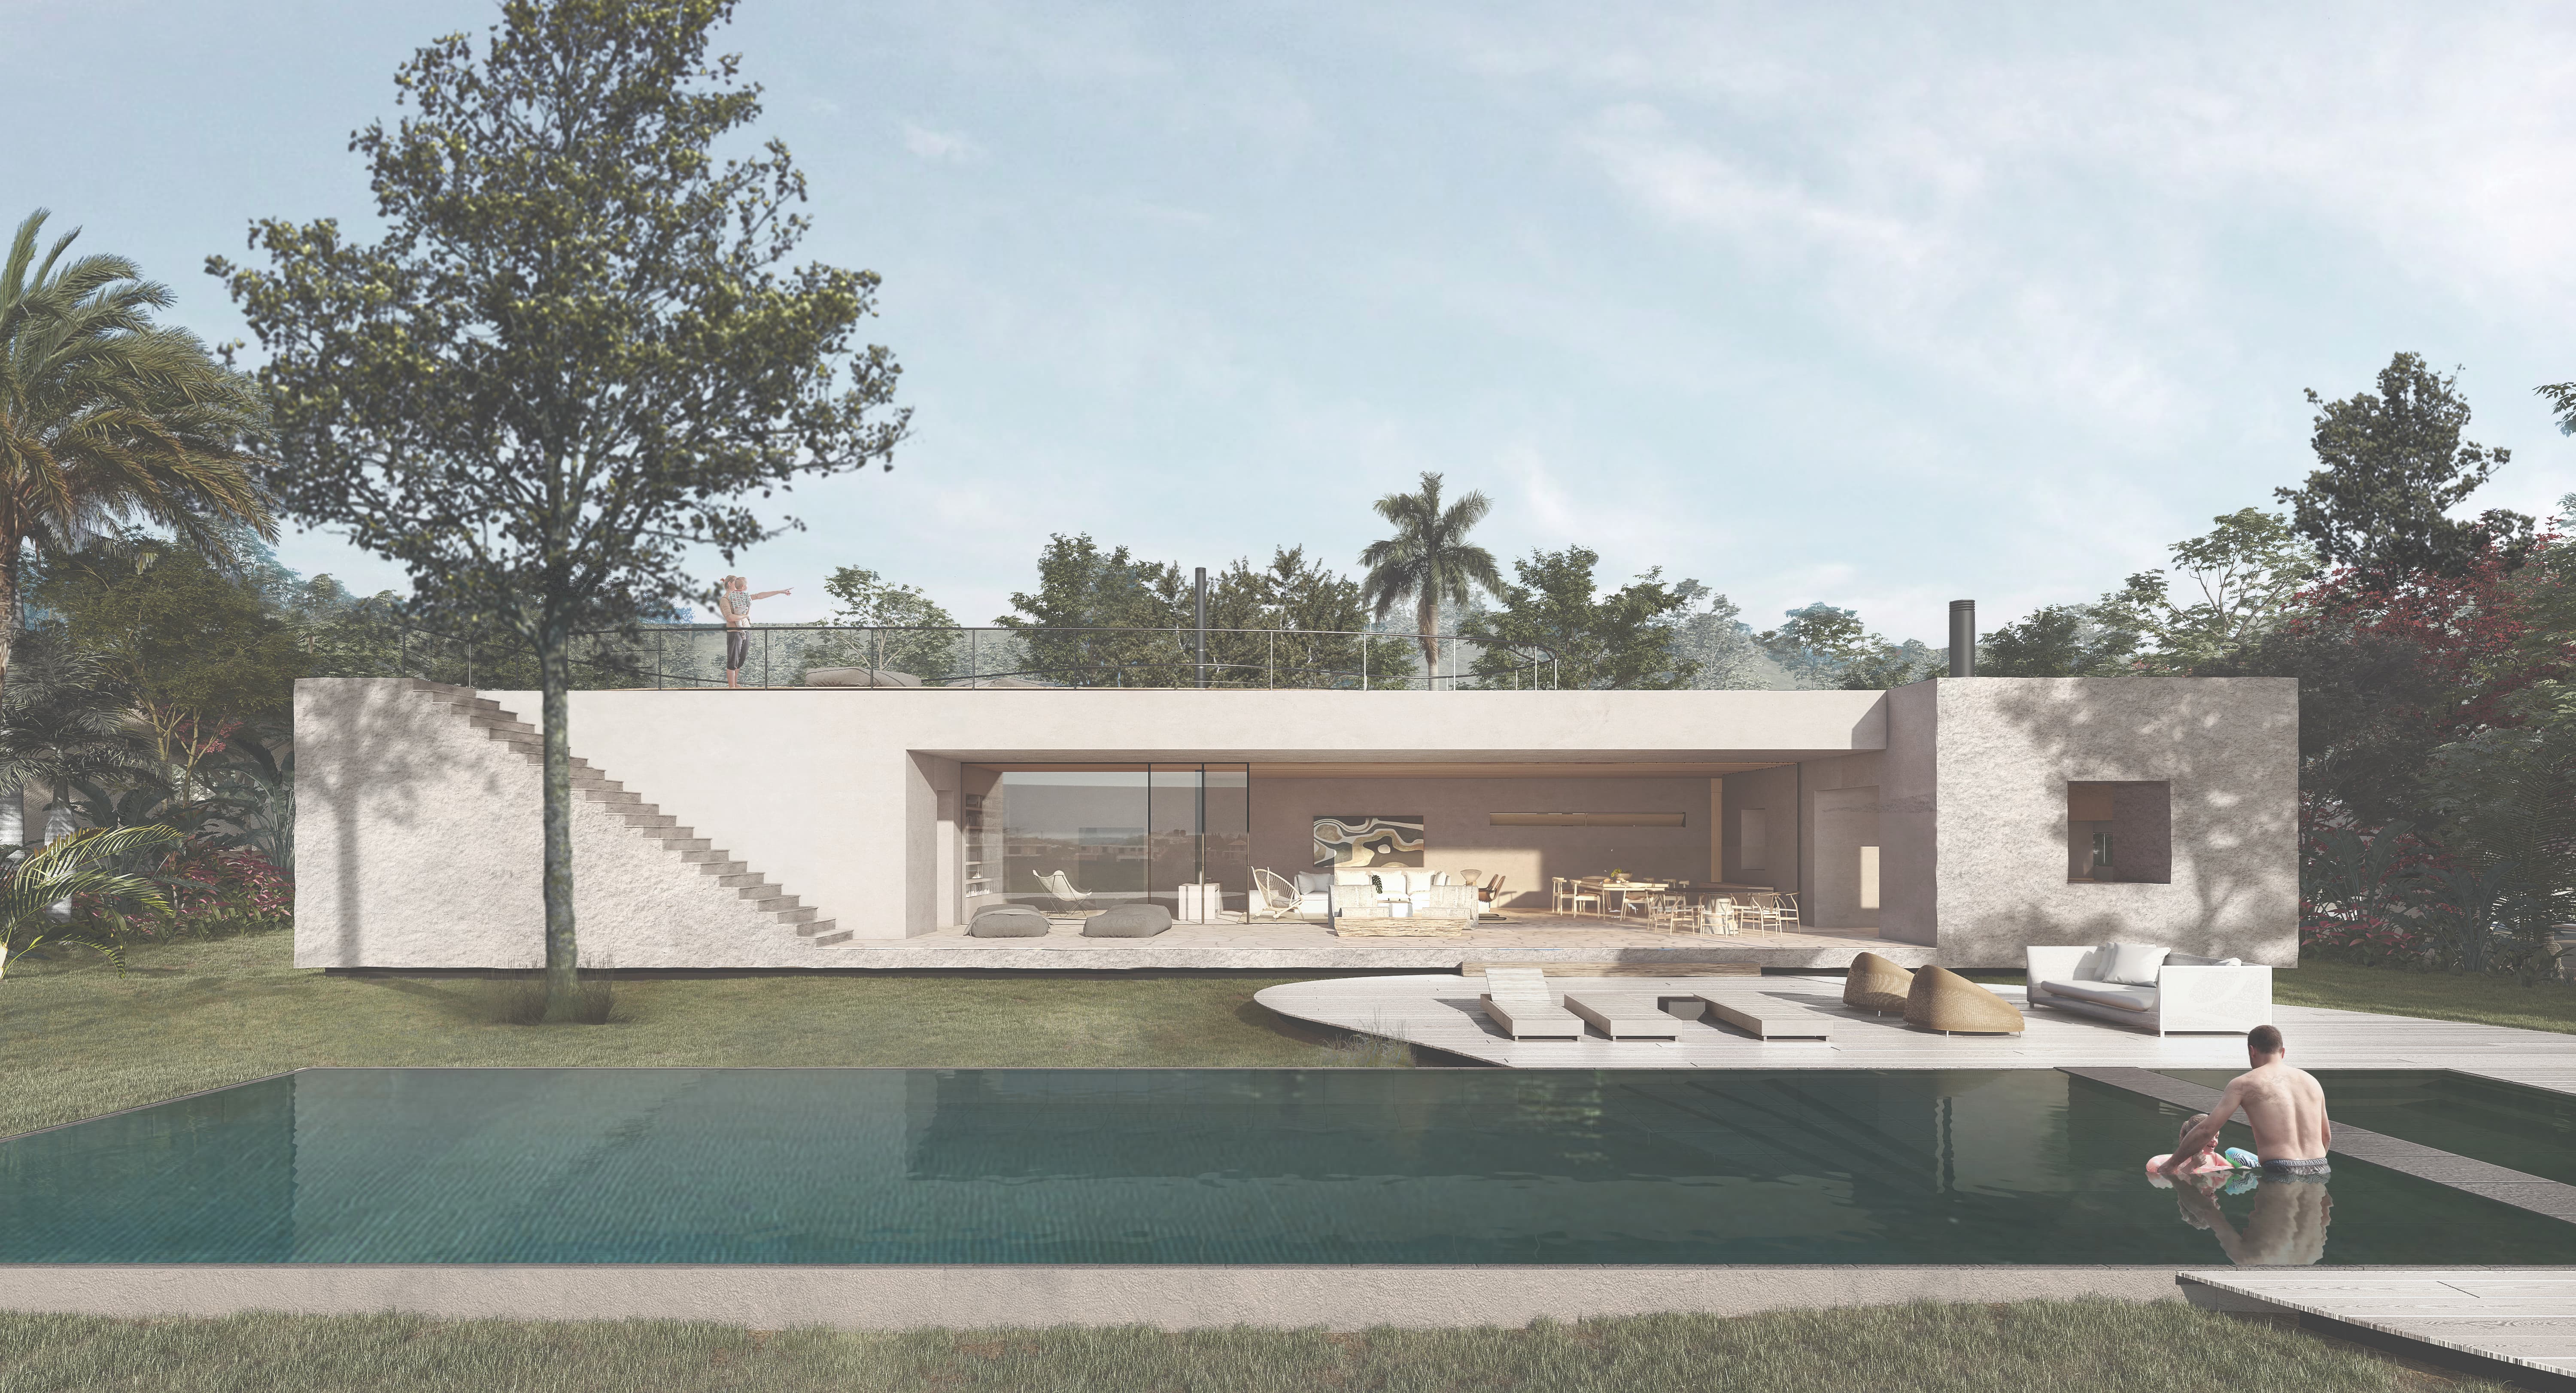 Arquitetura consciente junta o bonito com o sustentável e já coleciona bons exemplos pelo Brasil